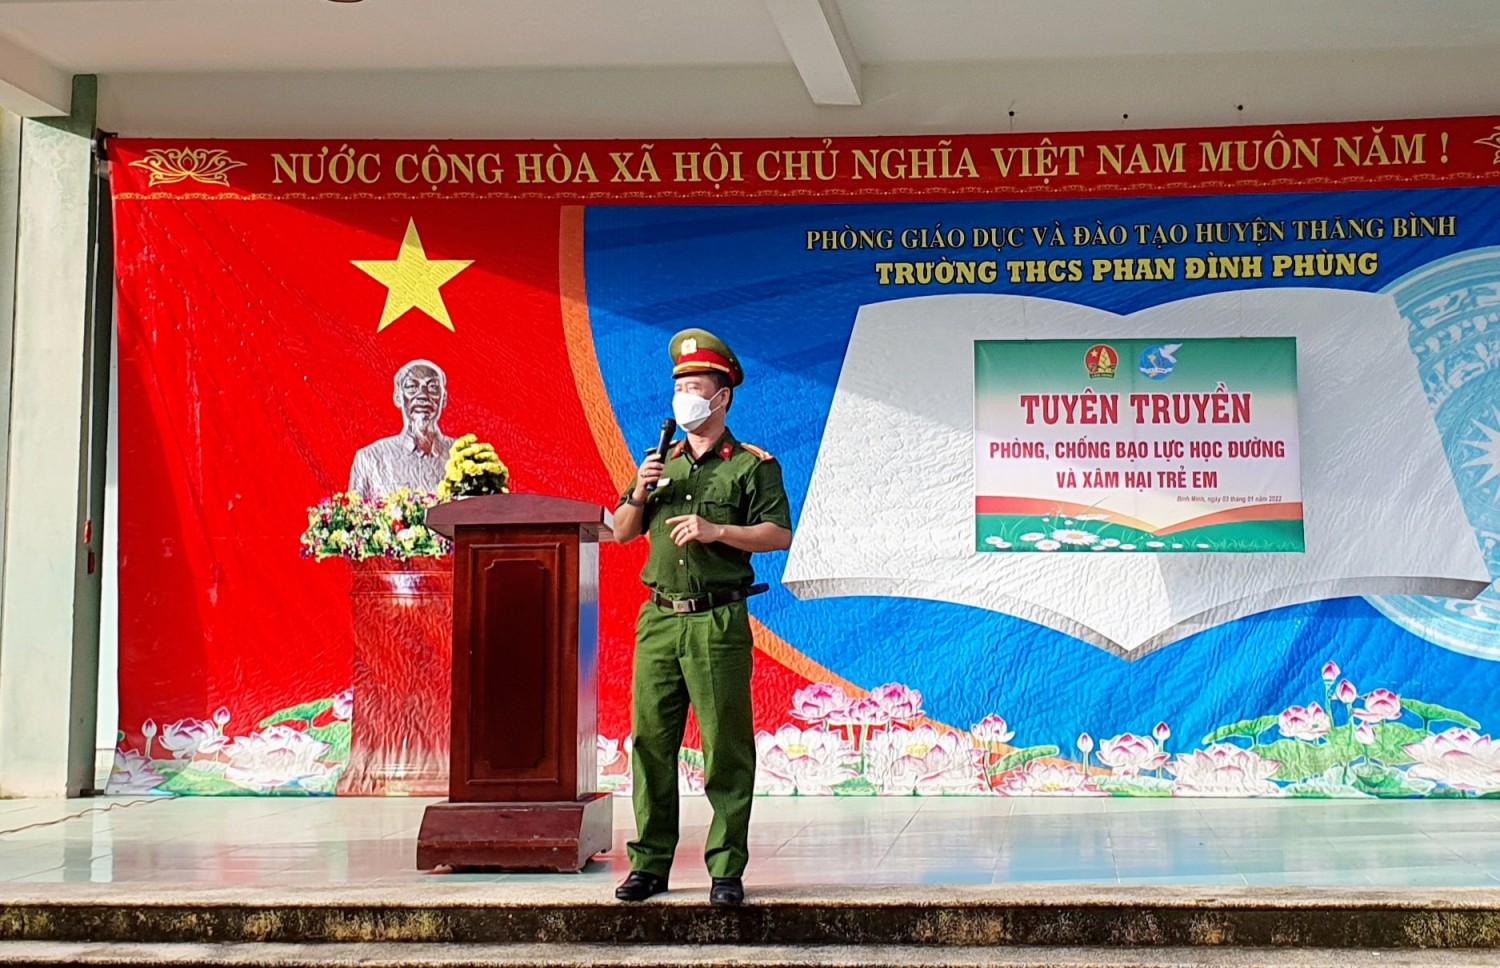 Liên đội trường thcs Phan Đình Phùng tổ chức tuyên truyền "Phòng, chống bạo lực học đường và xâm hại trẻ em"